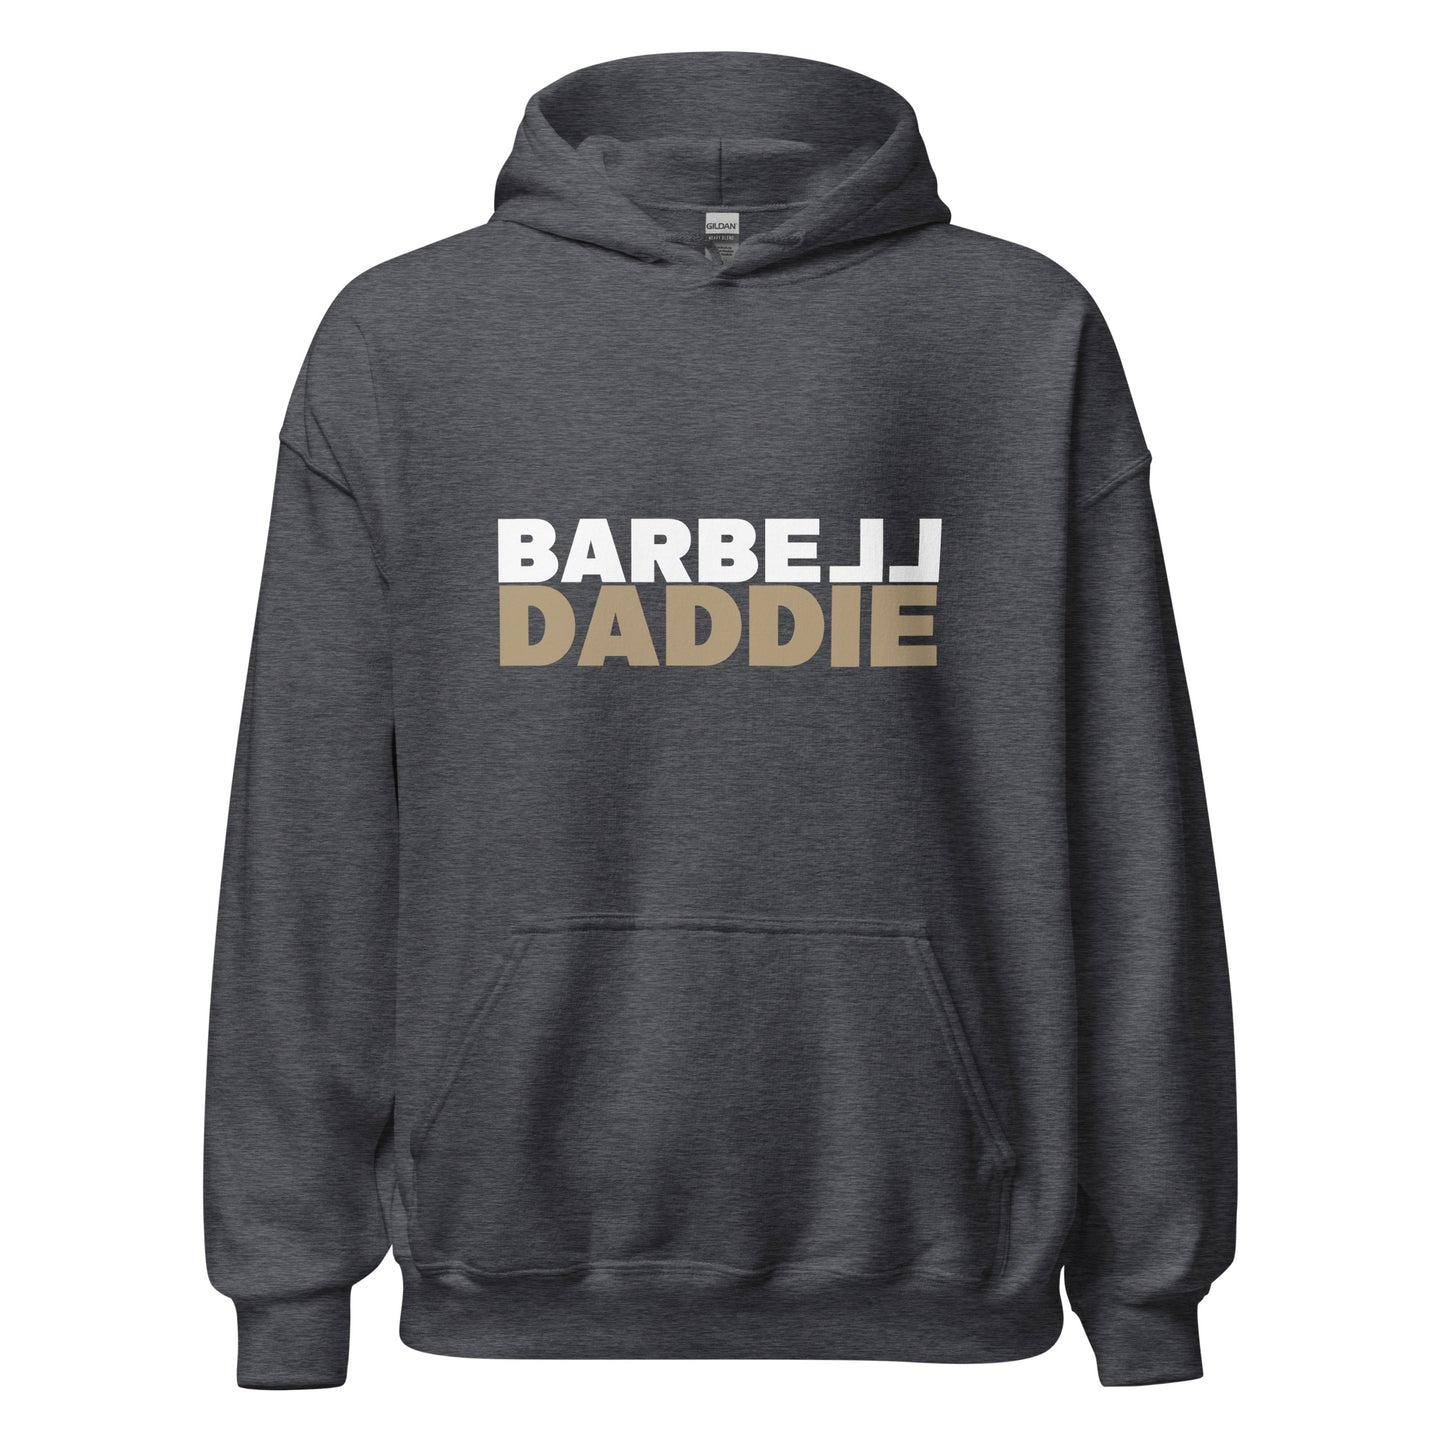 Barbell Daddie Unisex Hoodie